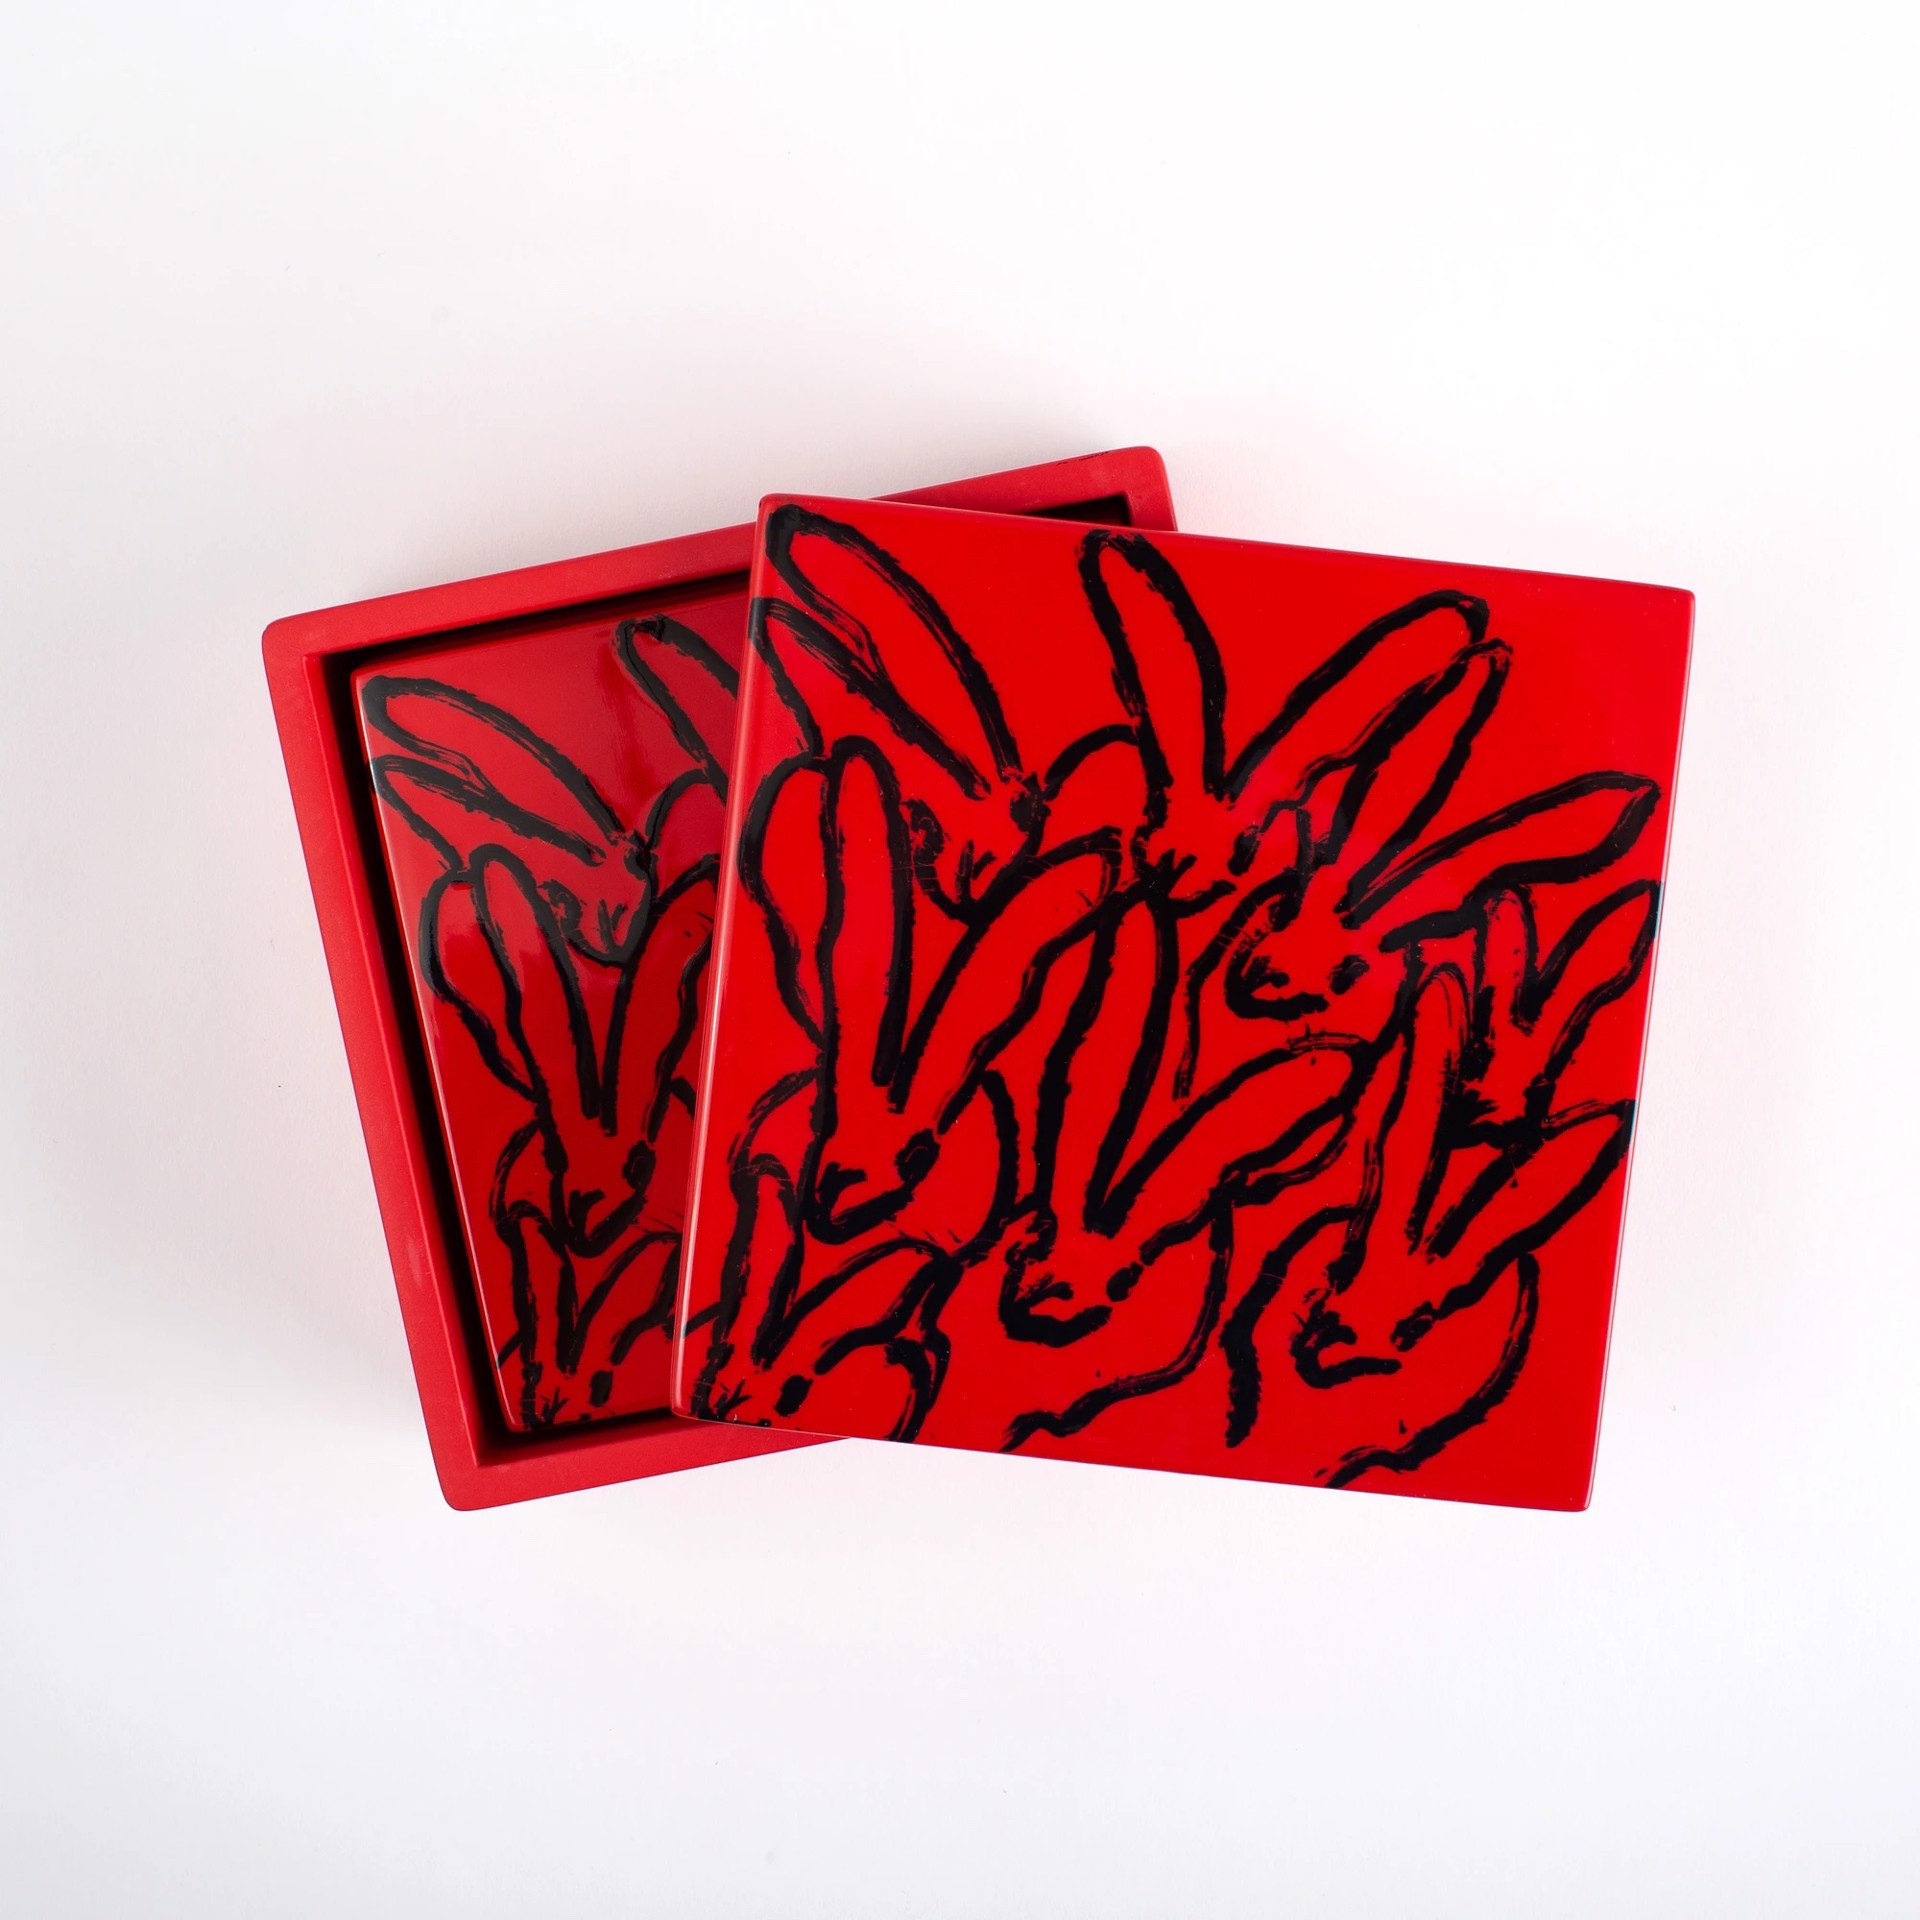 Red Bunny Box Set by Hunt Slonem (Hop Up Shop)